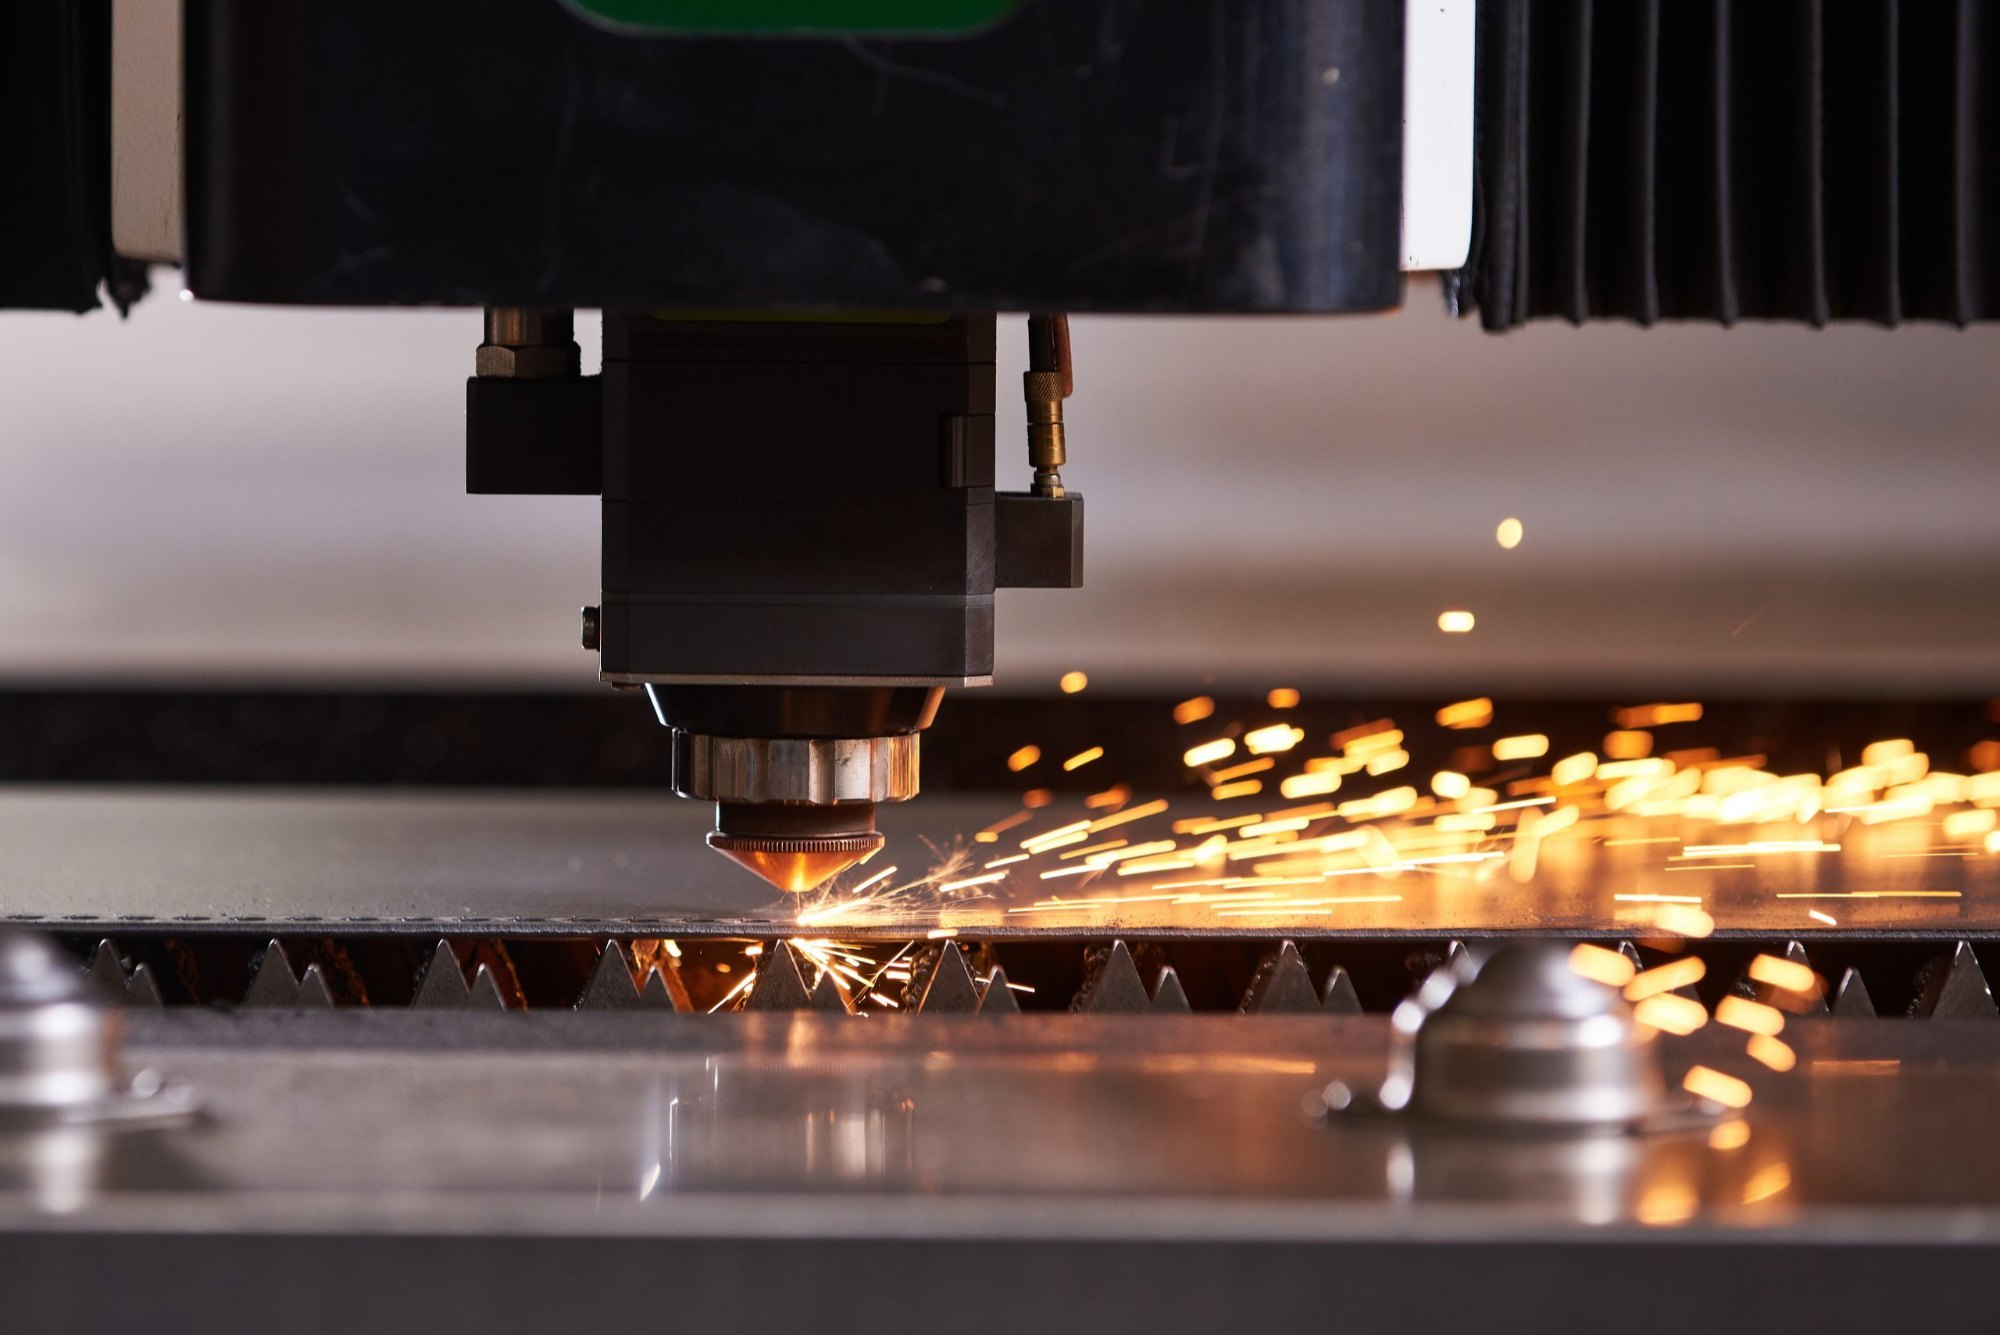 Nguyên lý cắt laser dựa trên việc sử dụng một chùm tia laser có năng lượng cao để cắt các loại vật liệu